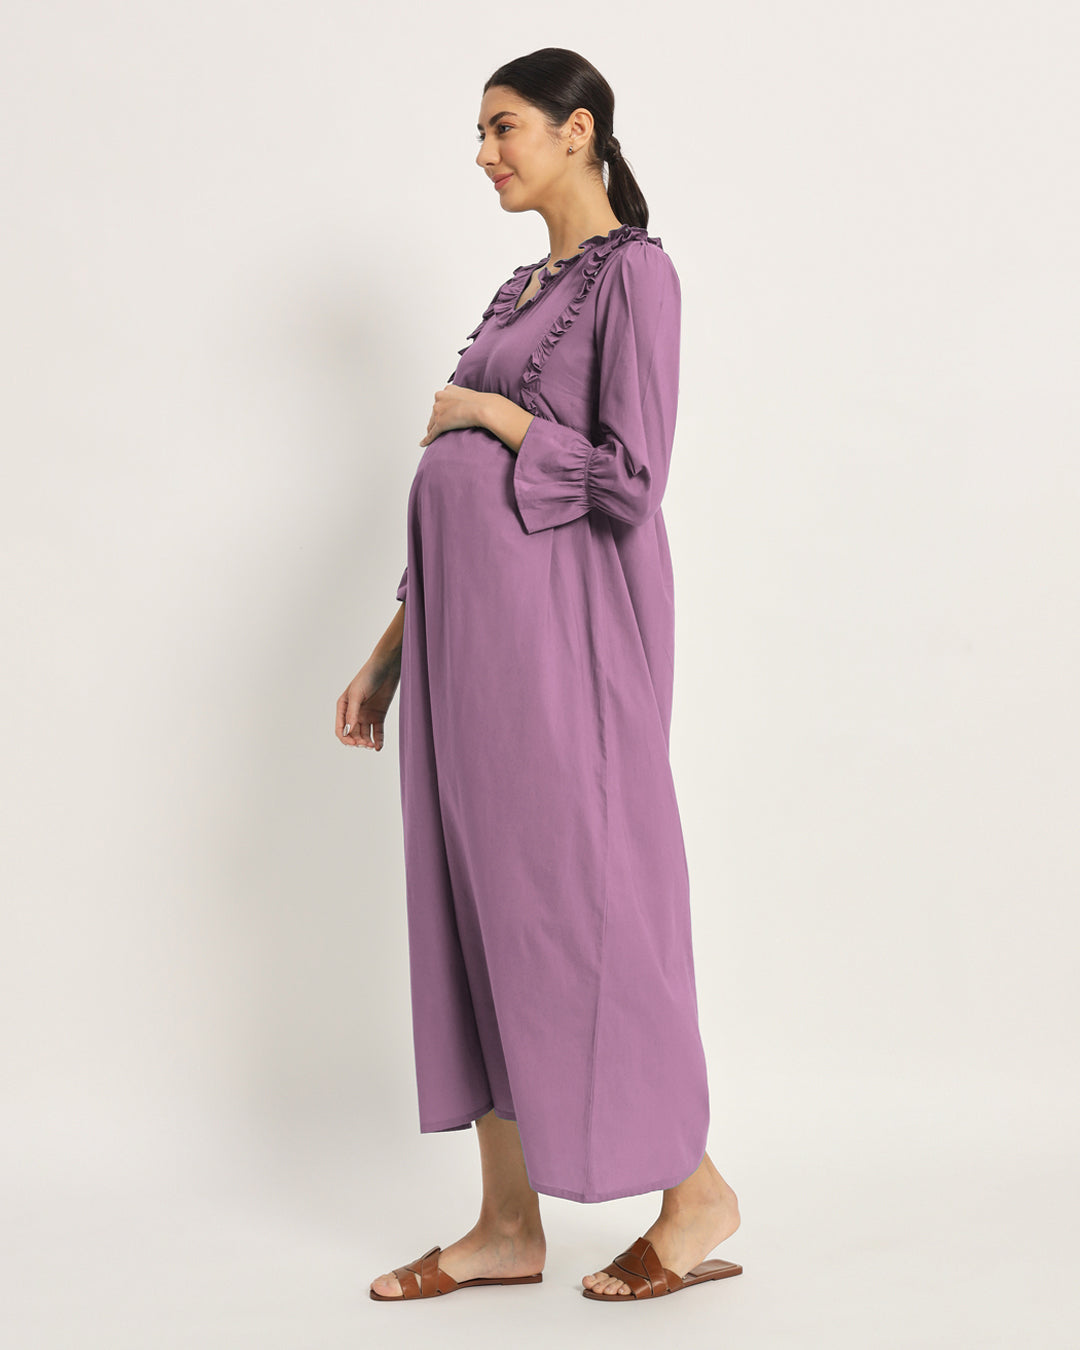 Iris Pink Functional Flow Maternity & Nursing Dress